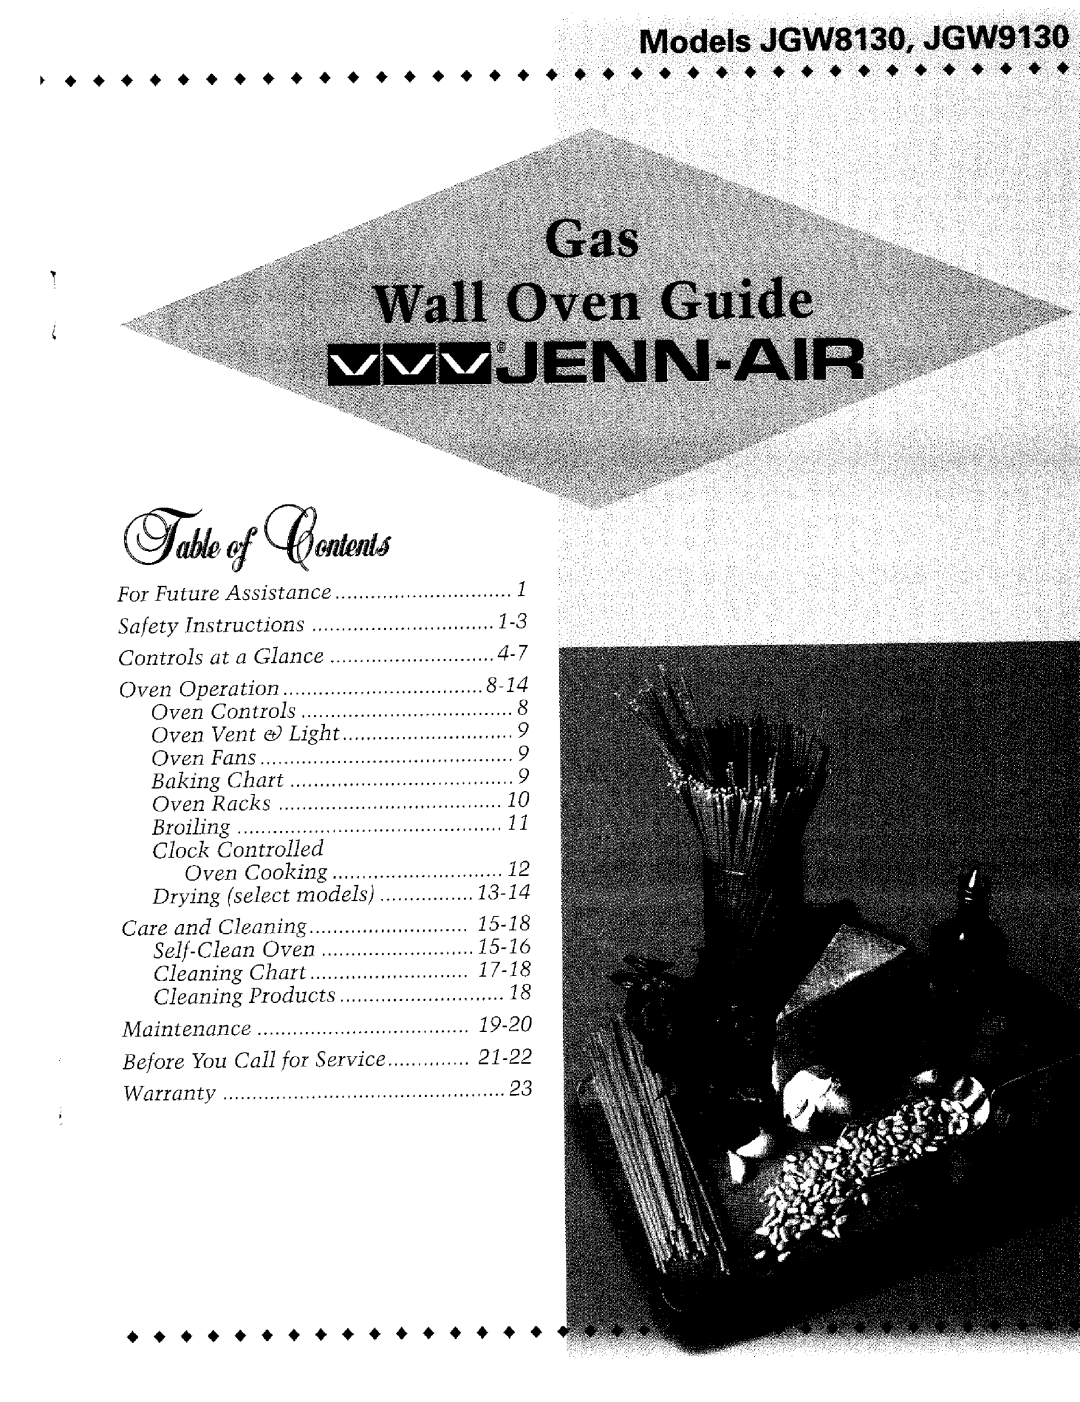 Jenn-Air JGW9130, JGW8130 warranty ii il¸ii!iii!i!!¸¸¸¸iil, @ d f, i !i!¸iiii 